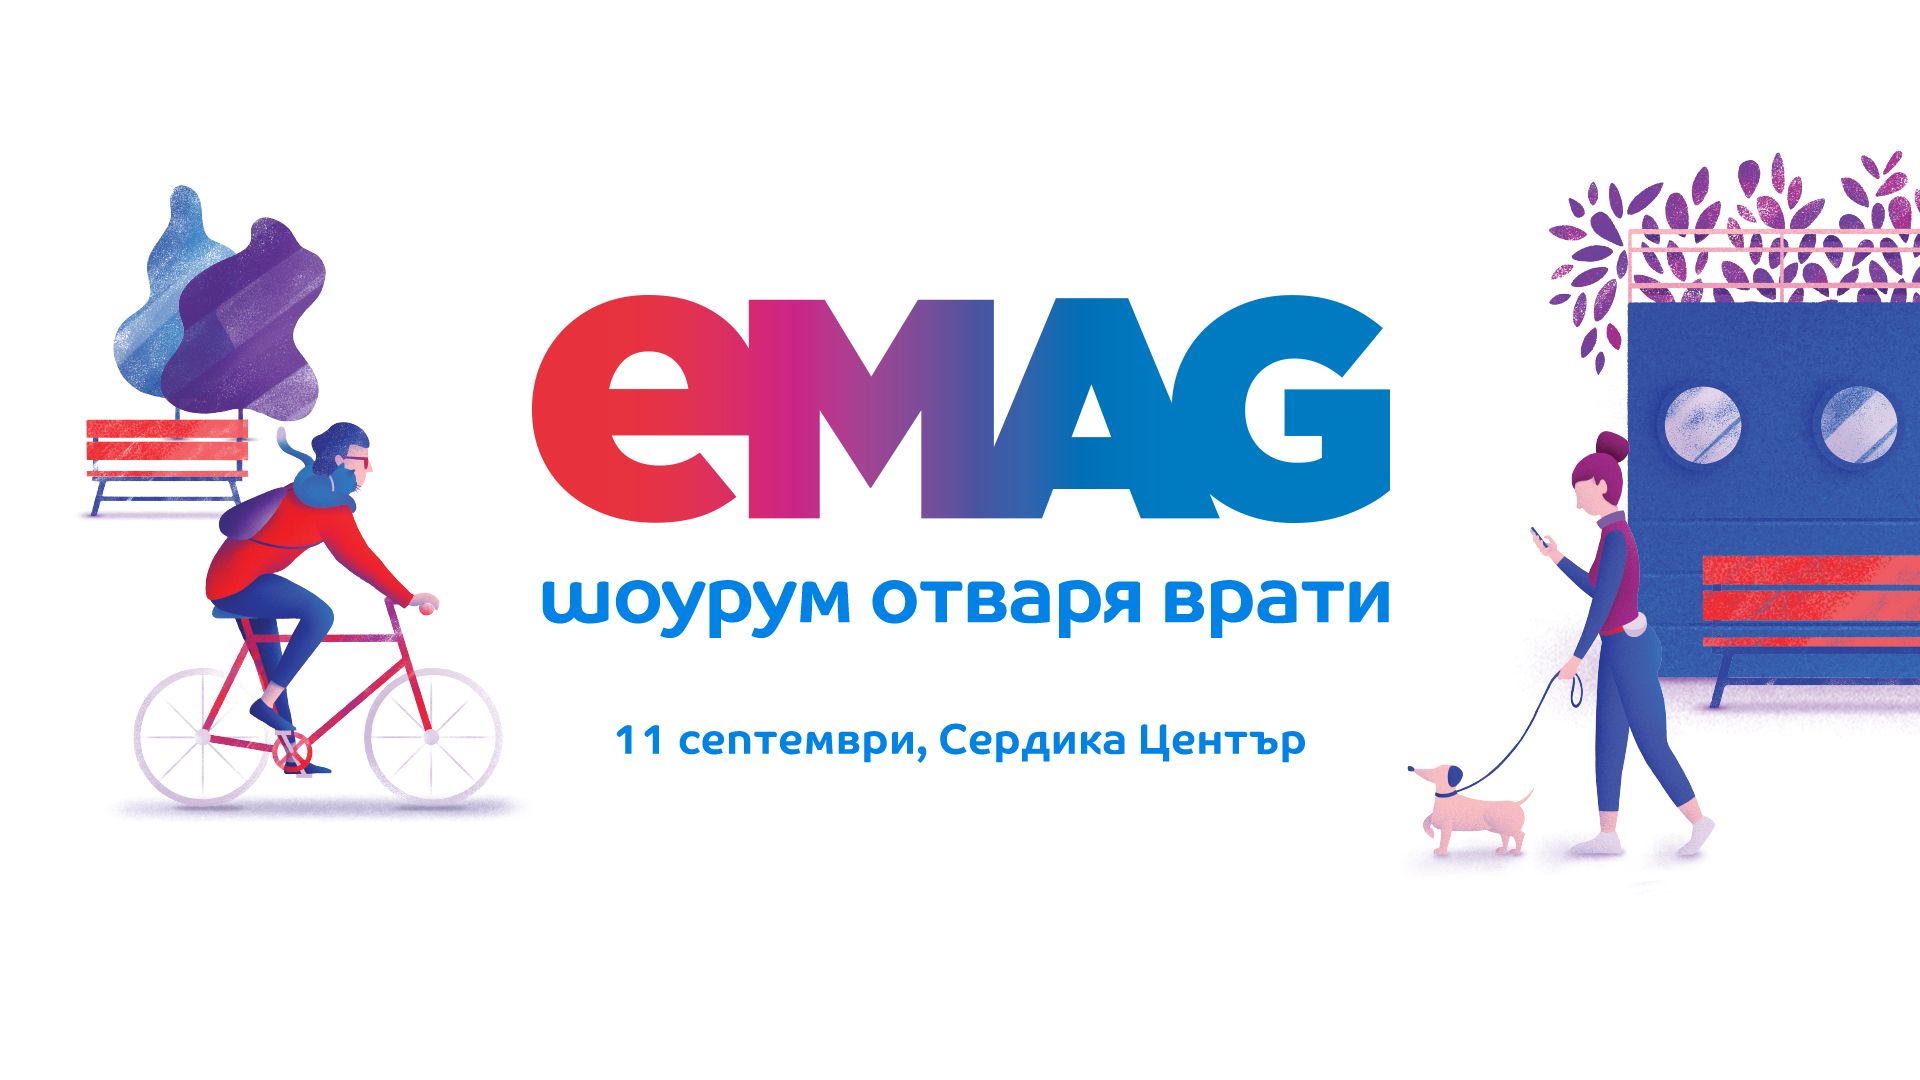 Eксклузивни предложения в първия шоурум на eMAG в София